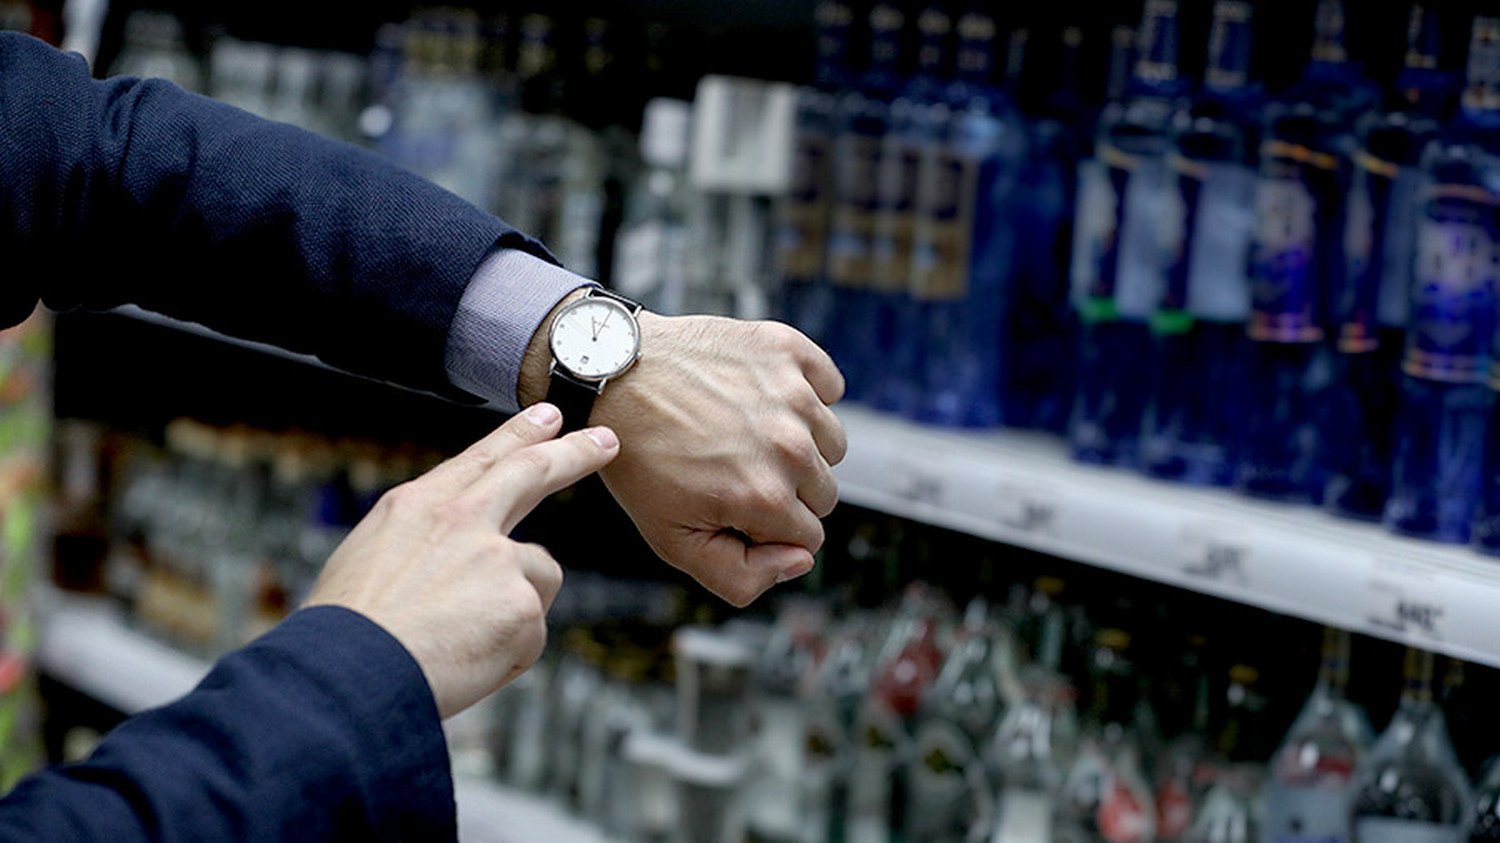 В магазинах на Конева и Советском проспекте выявлена незаконная продажа алкоголя